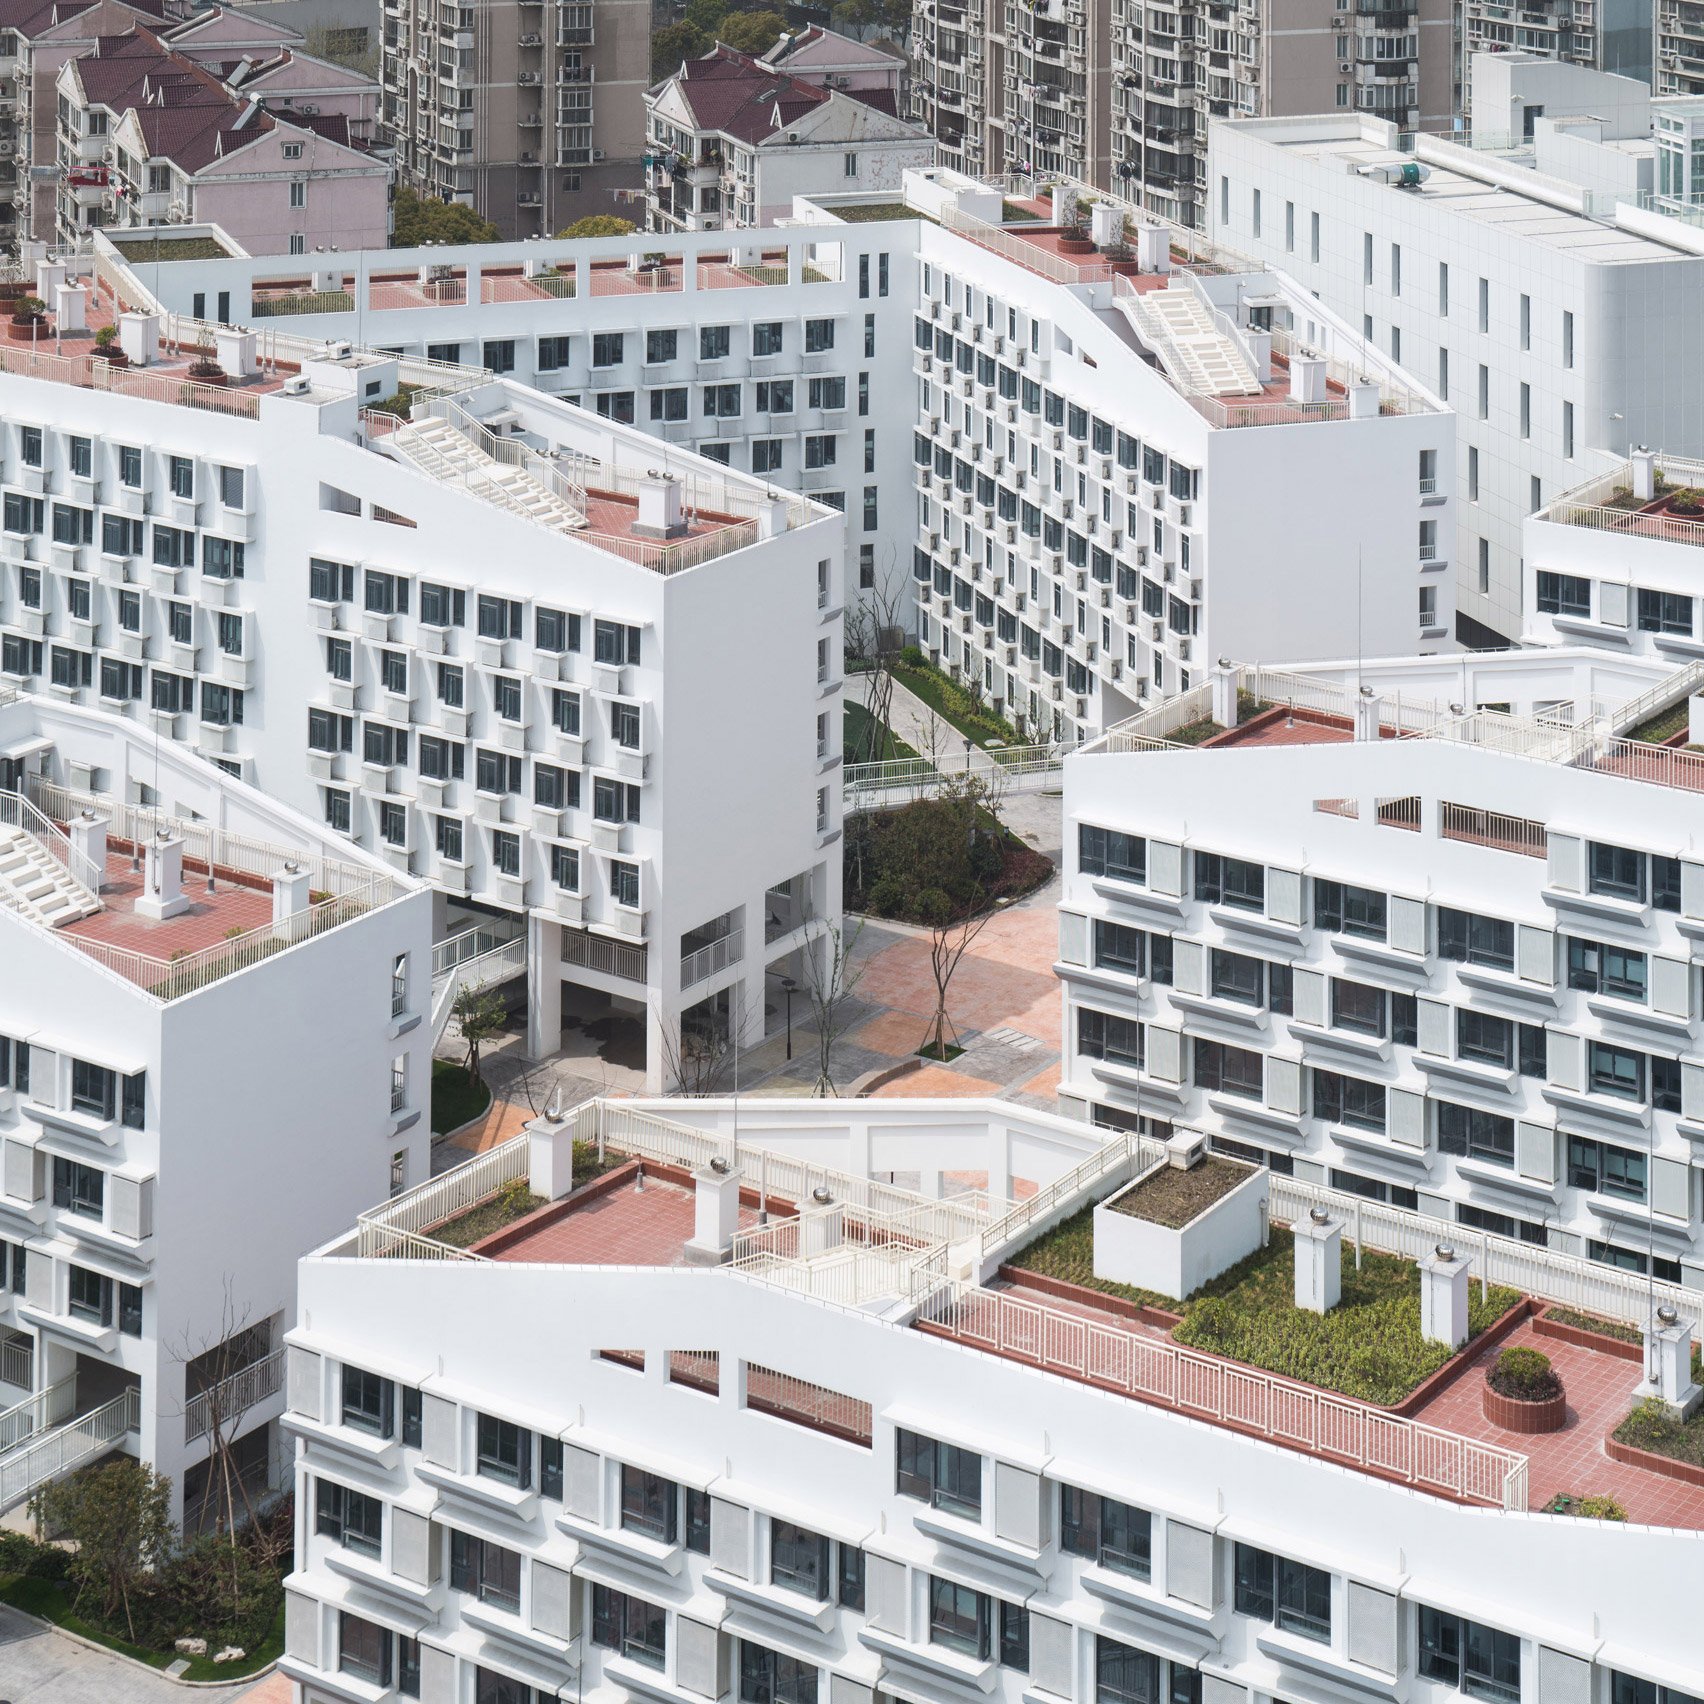 Поместье Longnan Garden в Шанхае бросило вызов китайской жилищной модели